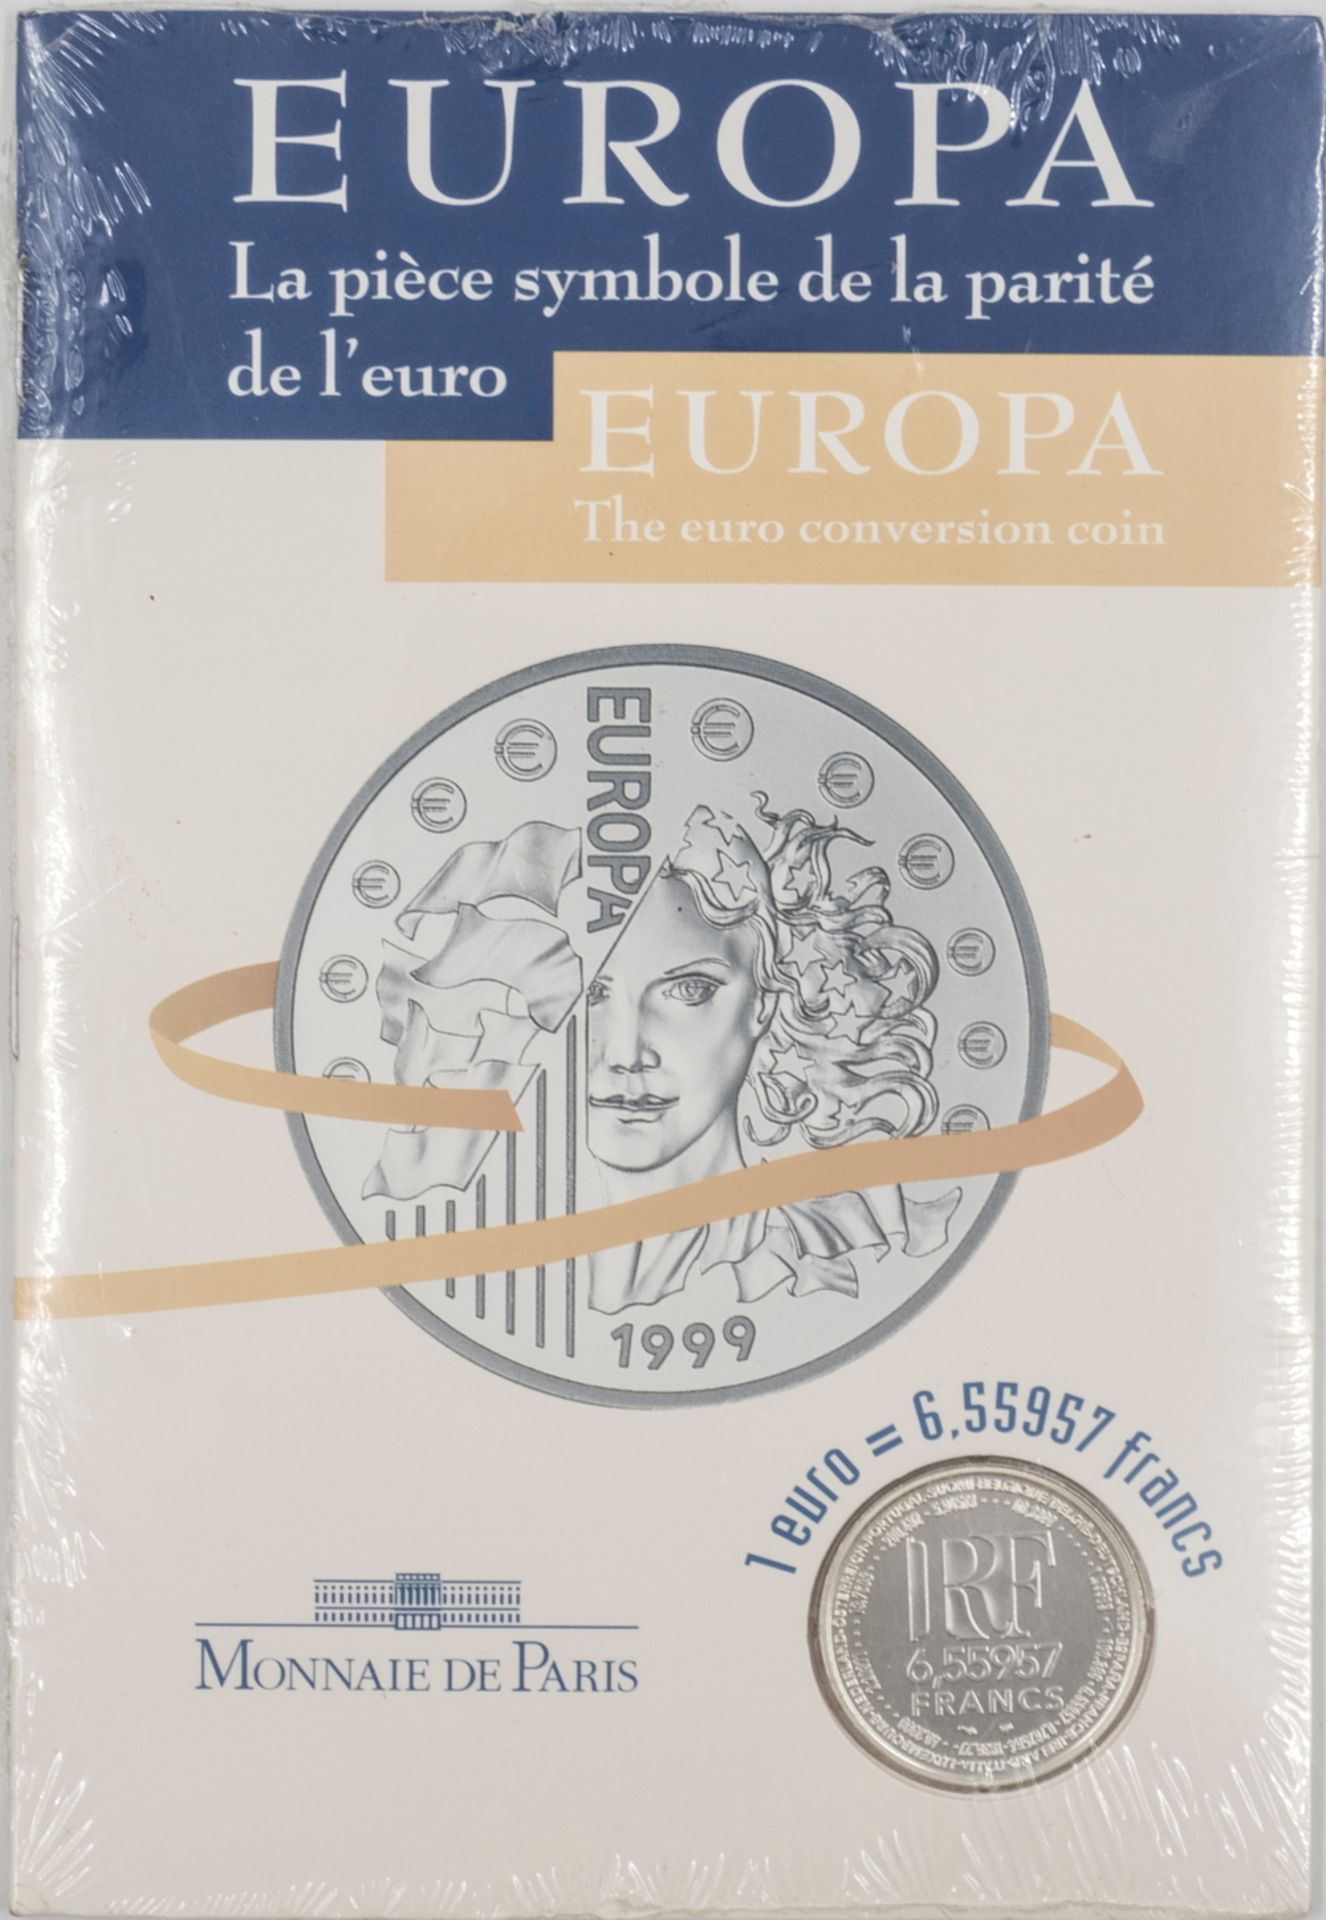 Frankreich 1999, Silbermedaille Monnaie de Paris Europa - monnaie parité. Umrechnung Euro -